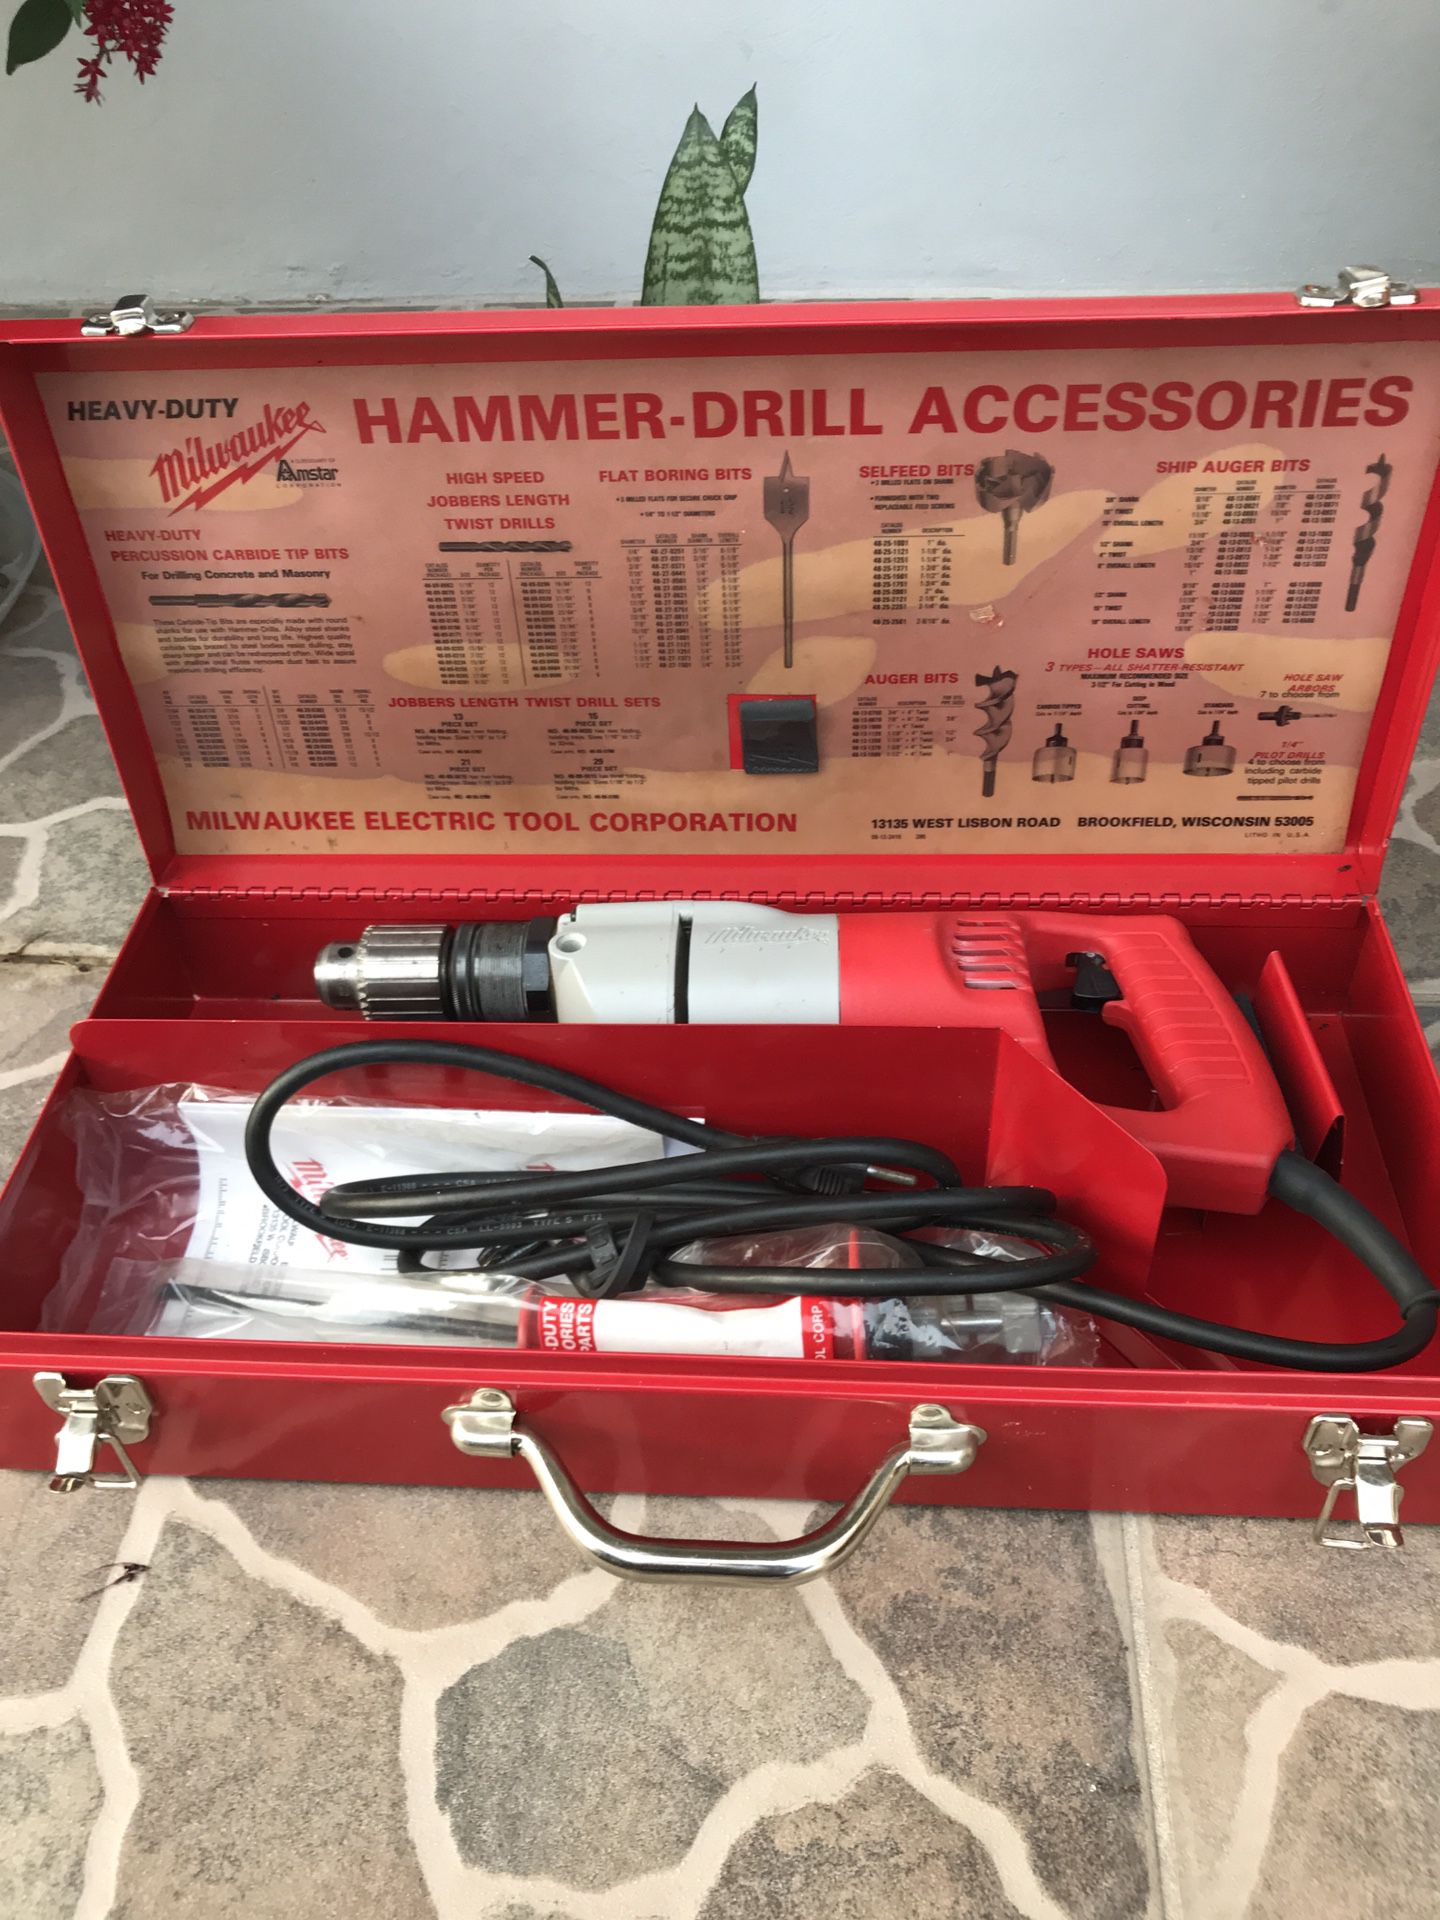 Milwaukee heavy duty hammer drill